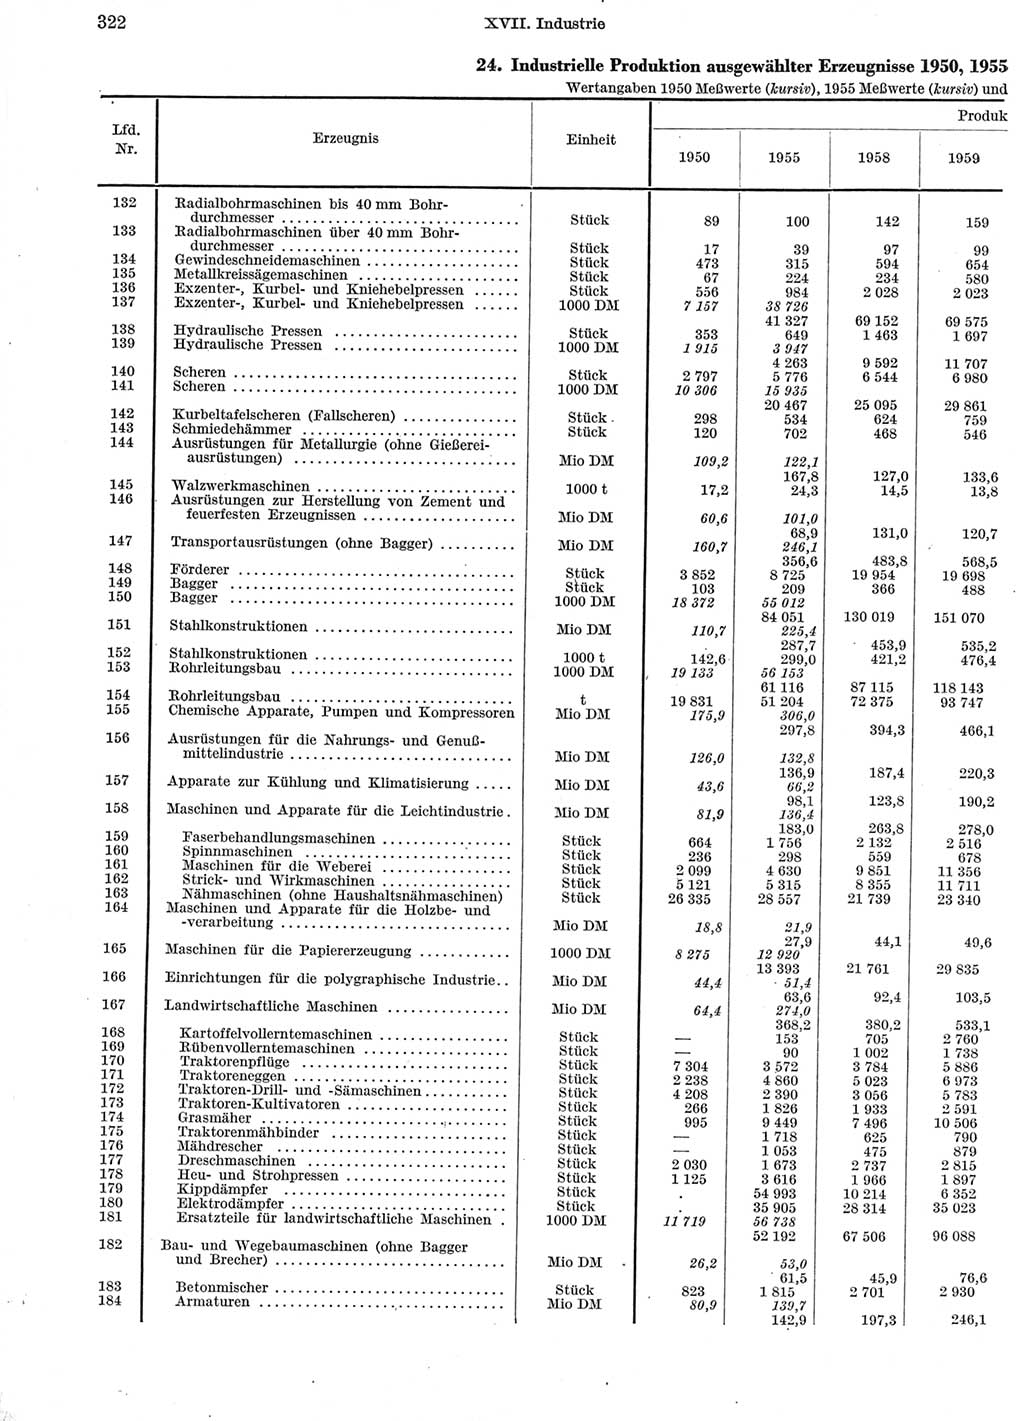 Statistisches Jahrbuch der Deutschen Demokratischen Republik (DDR) 1960-1961, Seite 322 (Stat. Jb. DDR 1960-1961, S. 322)